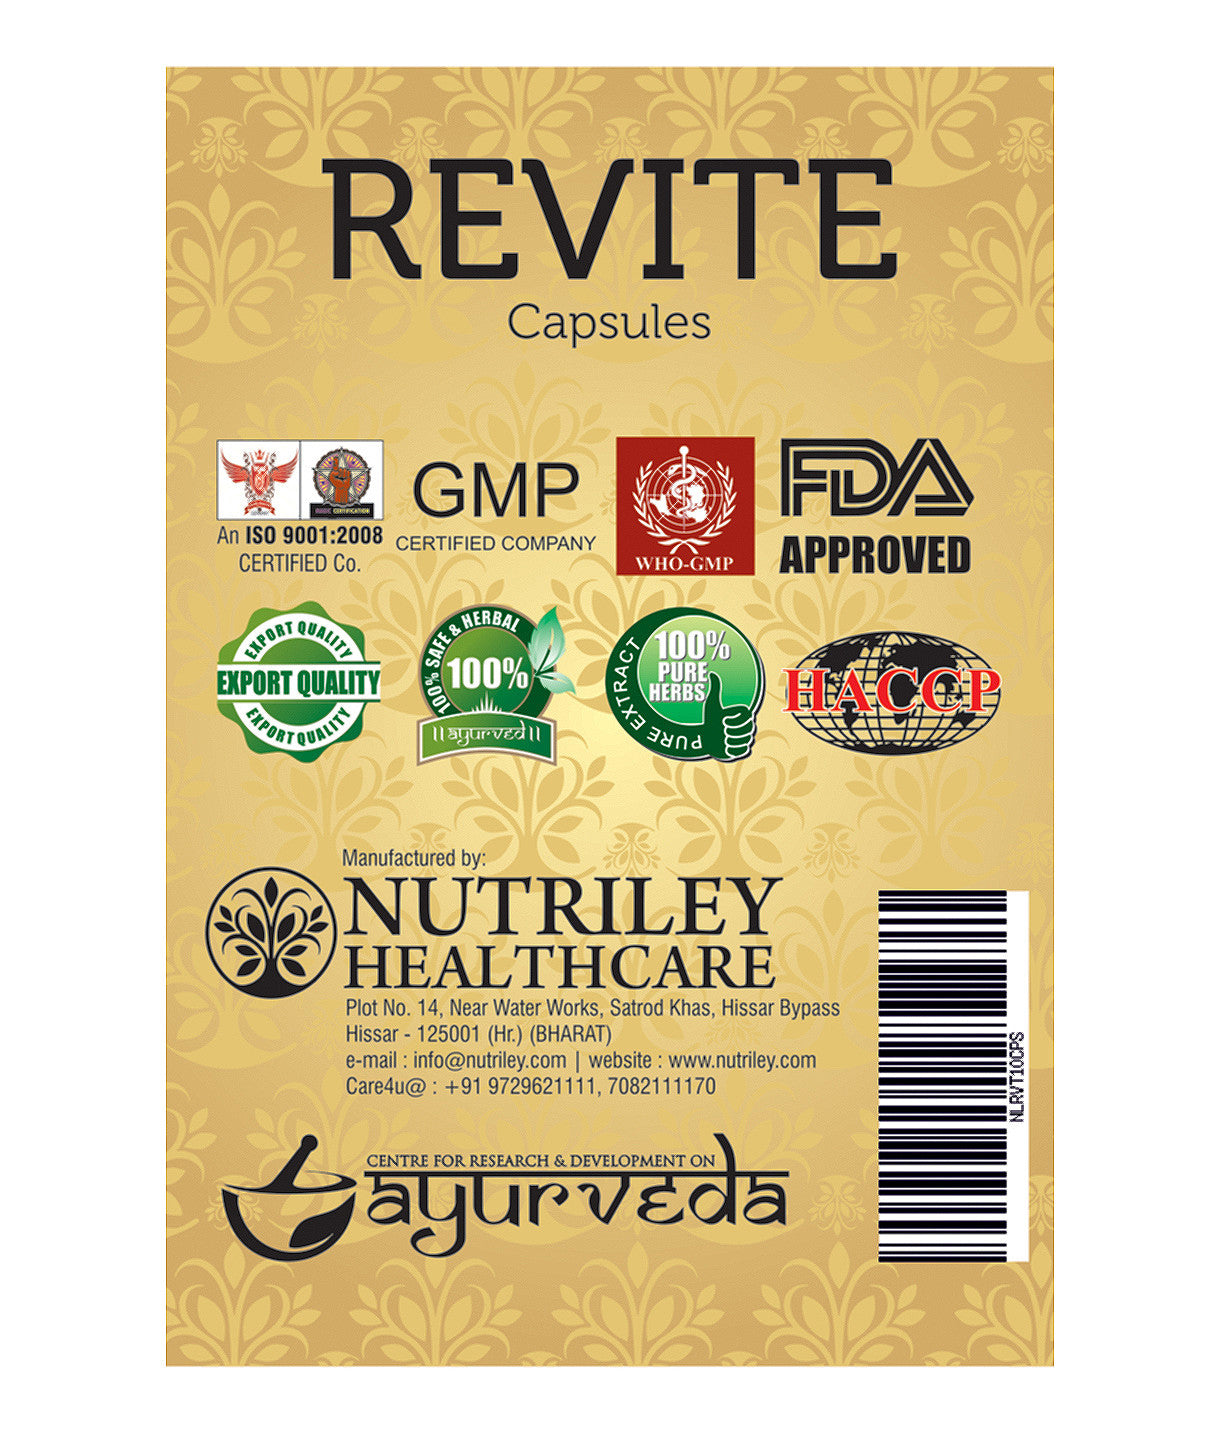 CRD Ayurveda Revite - General Wellness & Immunity Capsules (100 Capsules)